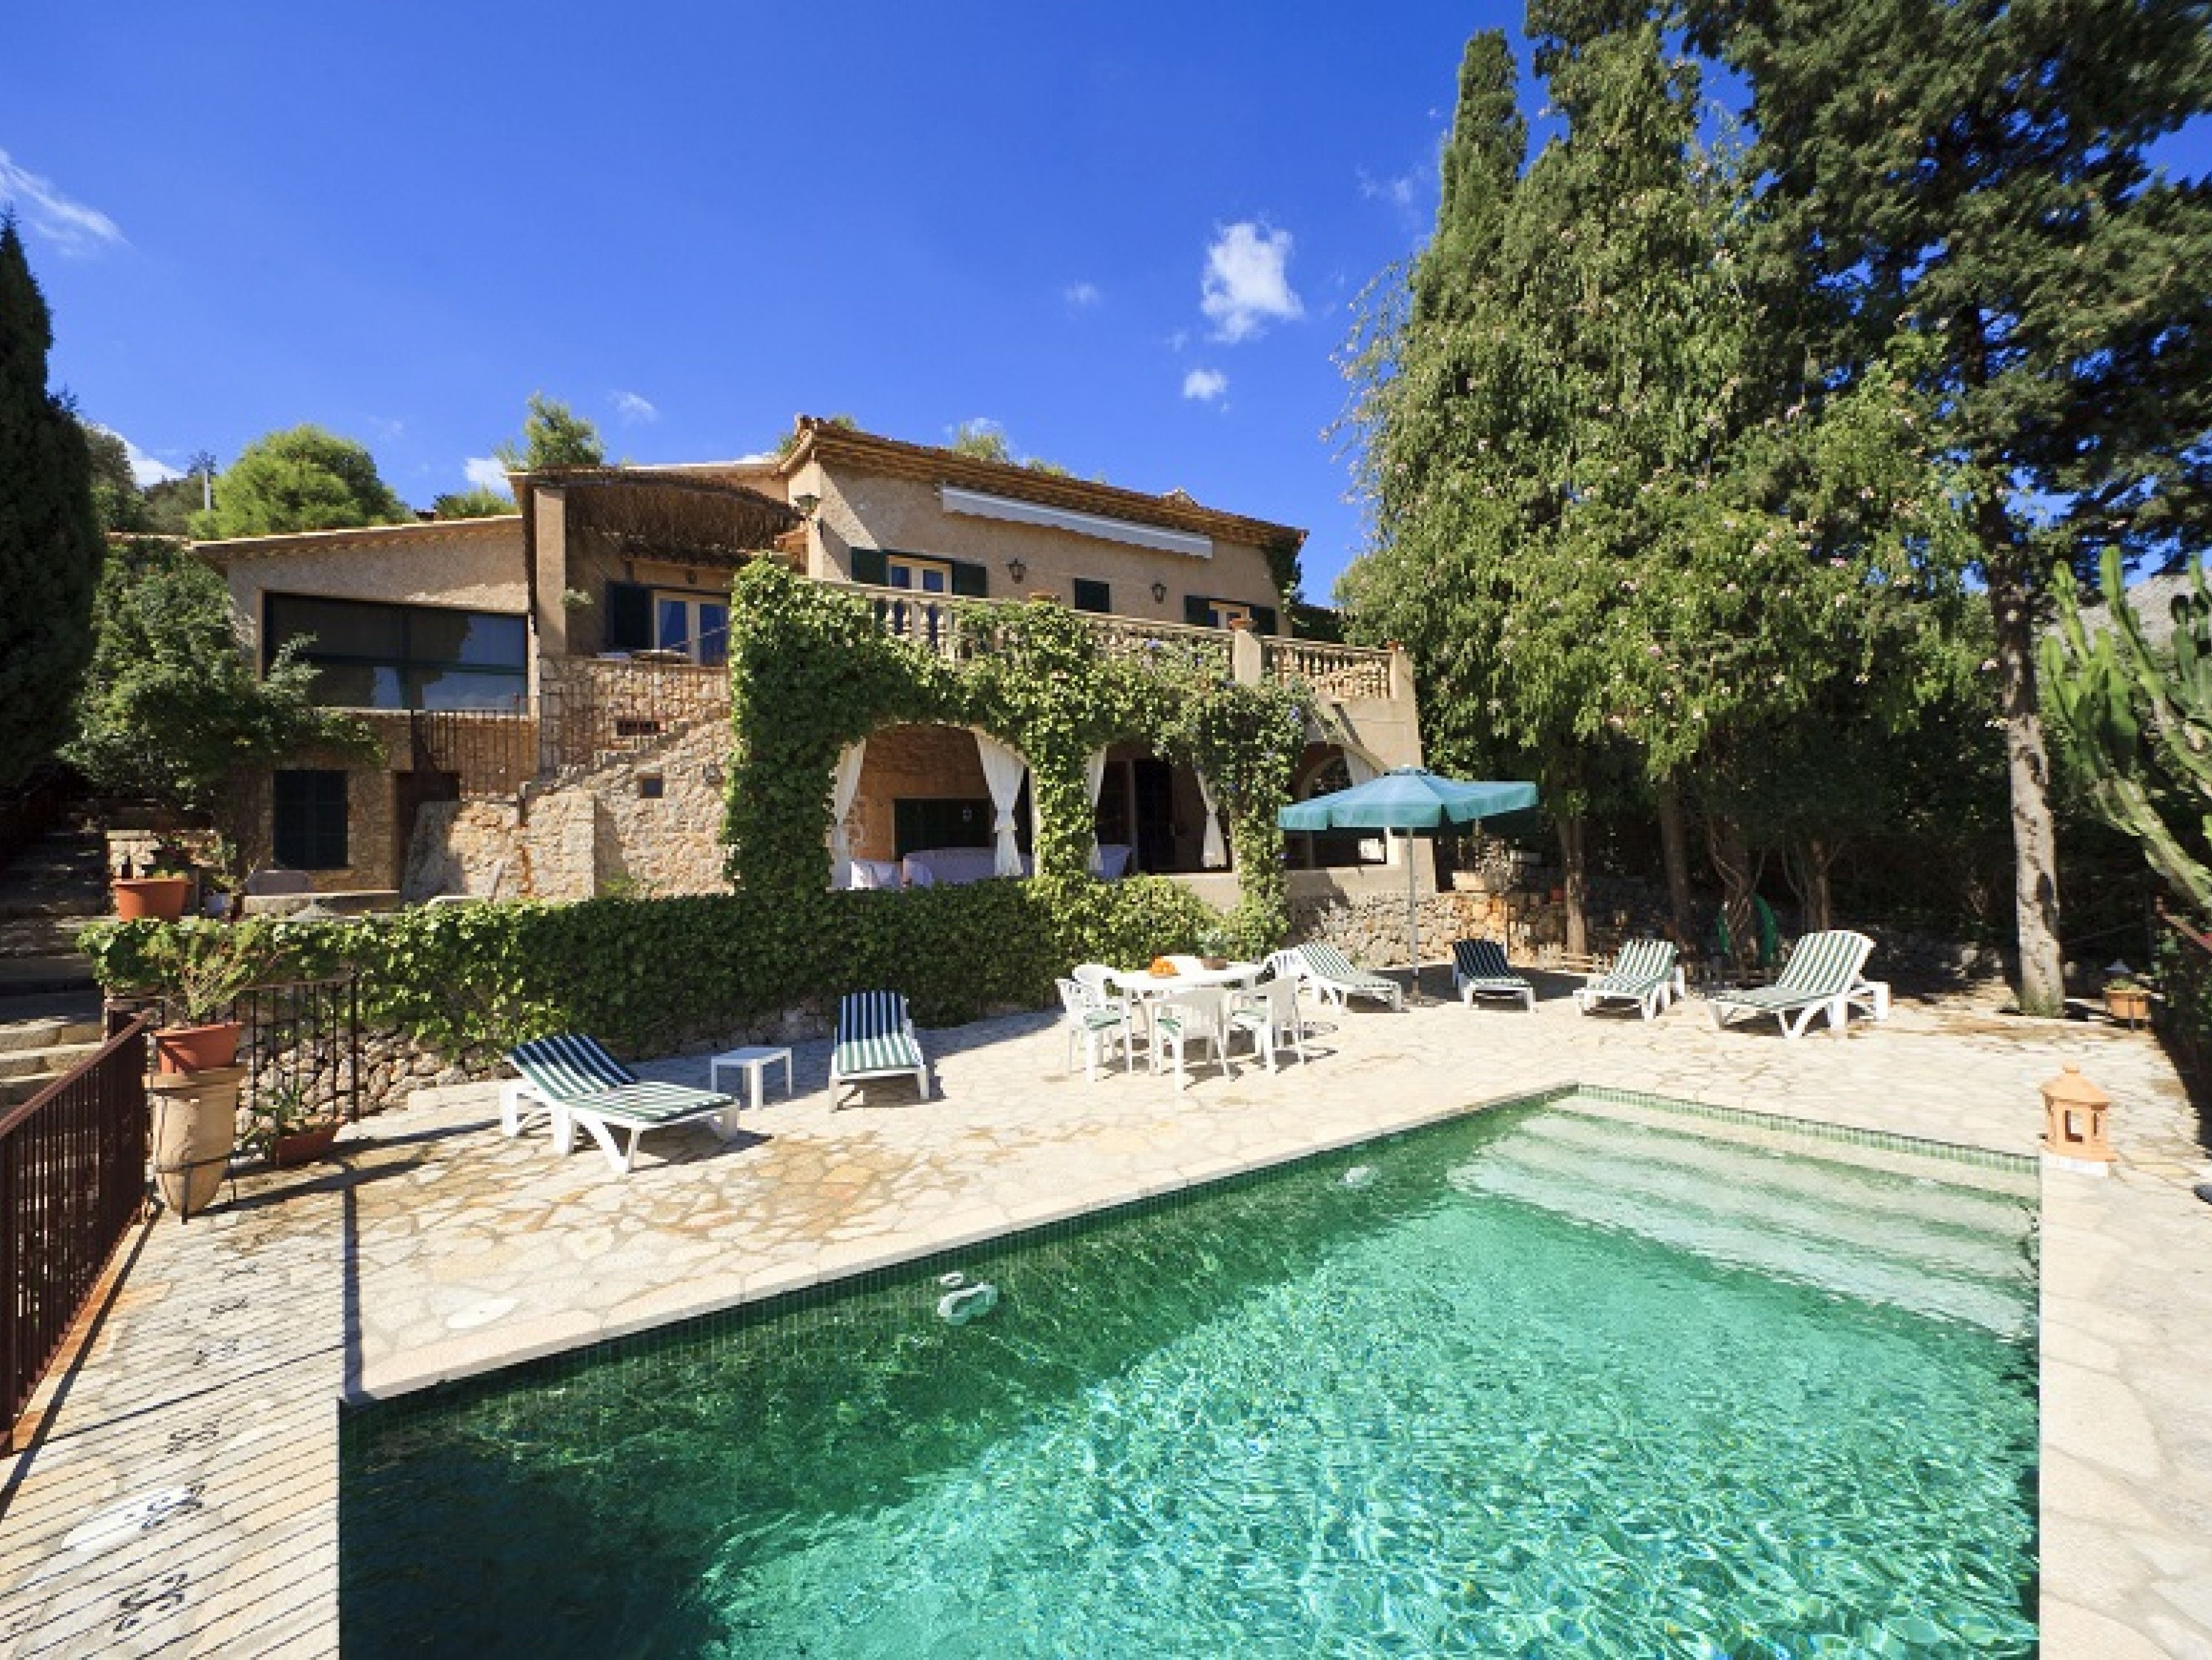 Calvario - Majorca holiday villas with pools